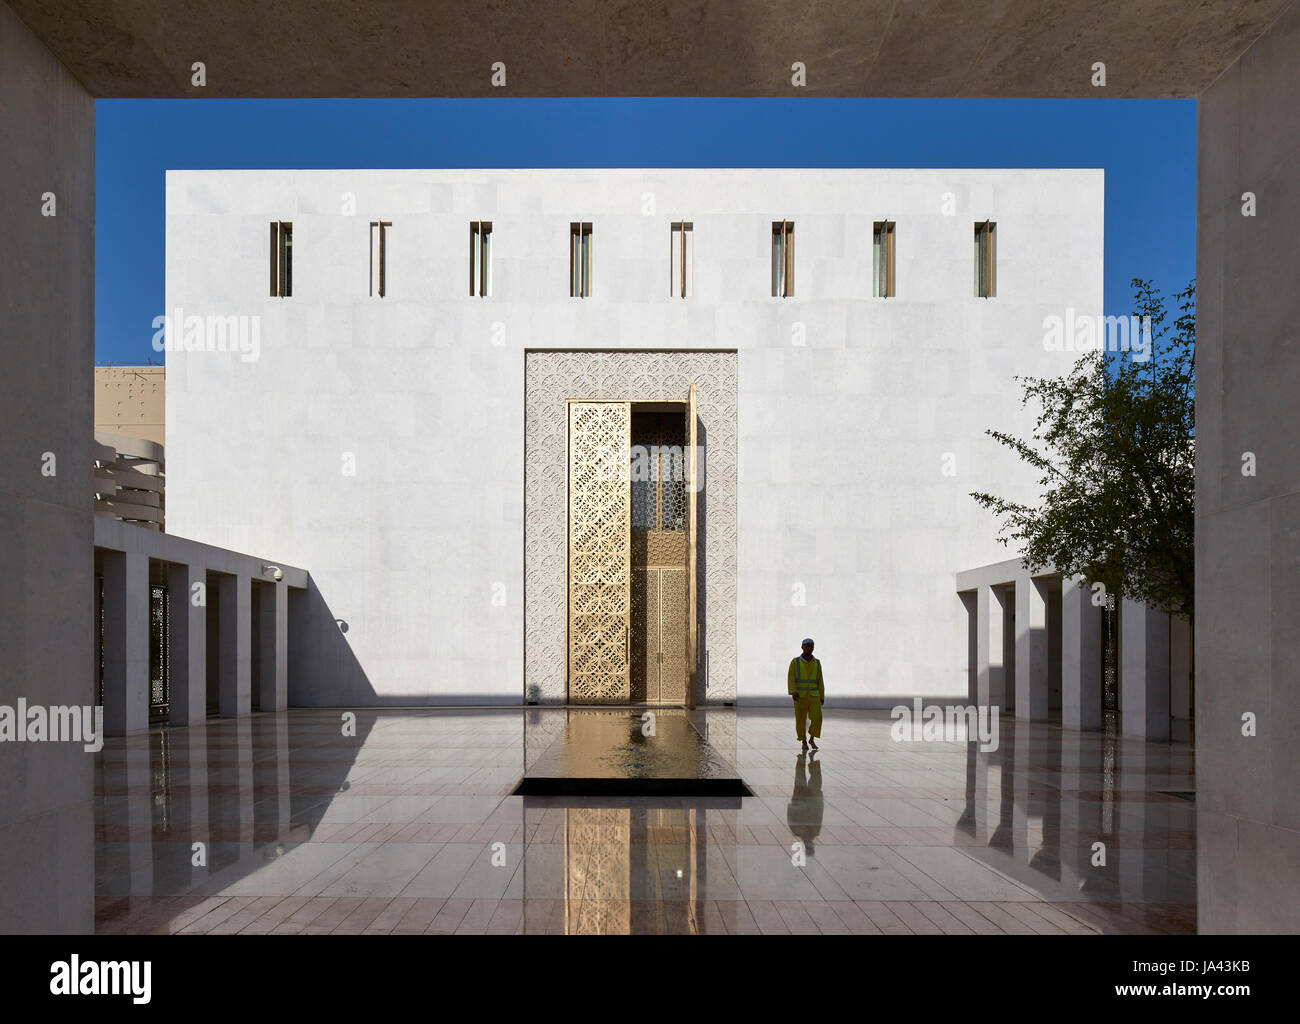 Am frühen Morgen Ansicht mit einsame Figur und Eingang. Jumaa Moschee, Doha, Vereinigte Arabische Emirate. Architekt: John McAslan & Partner, 2017. Stockfoto